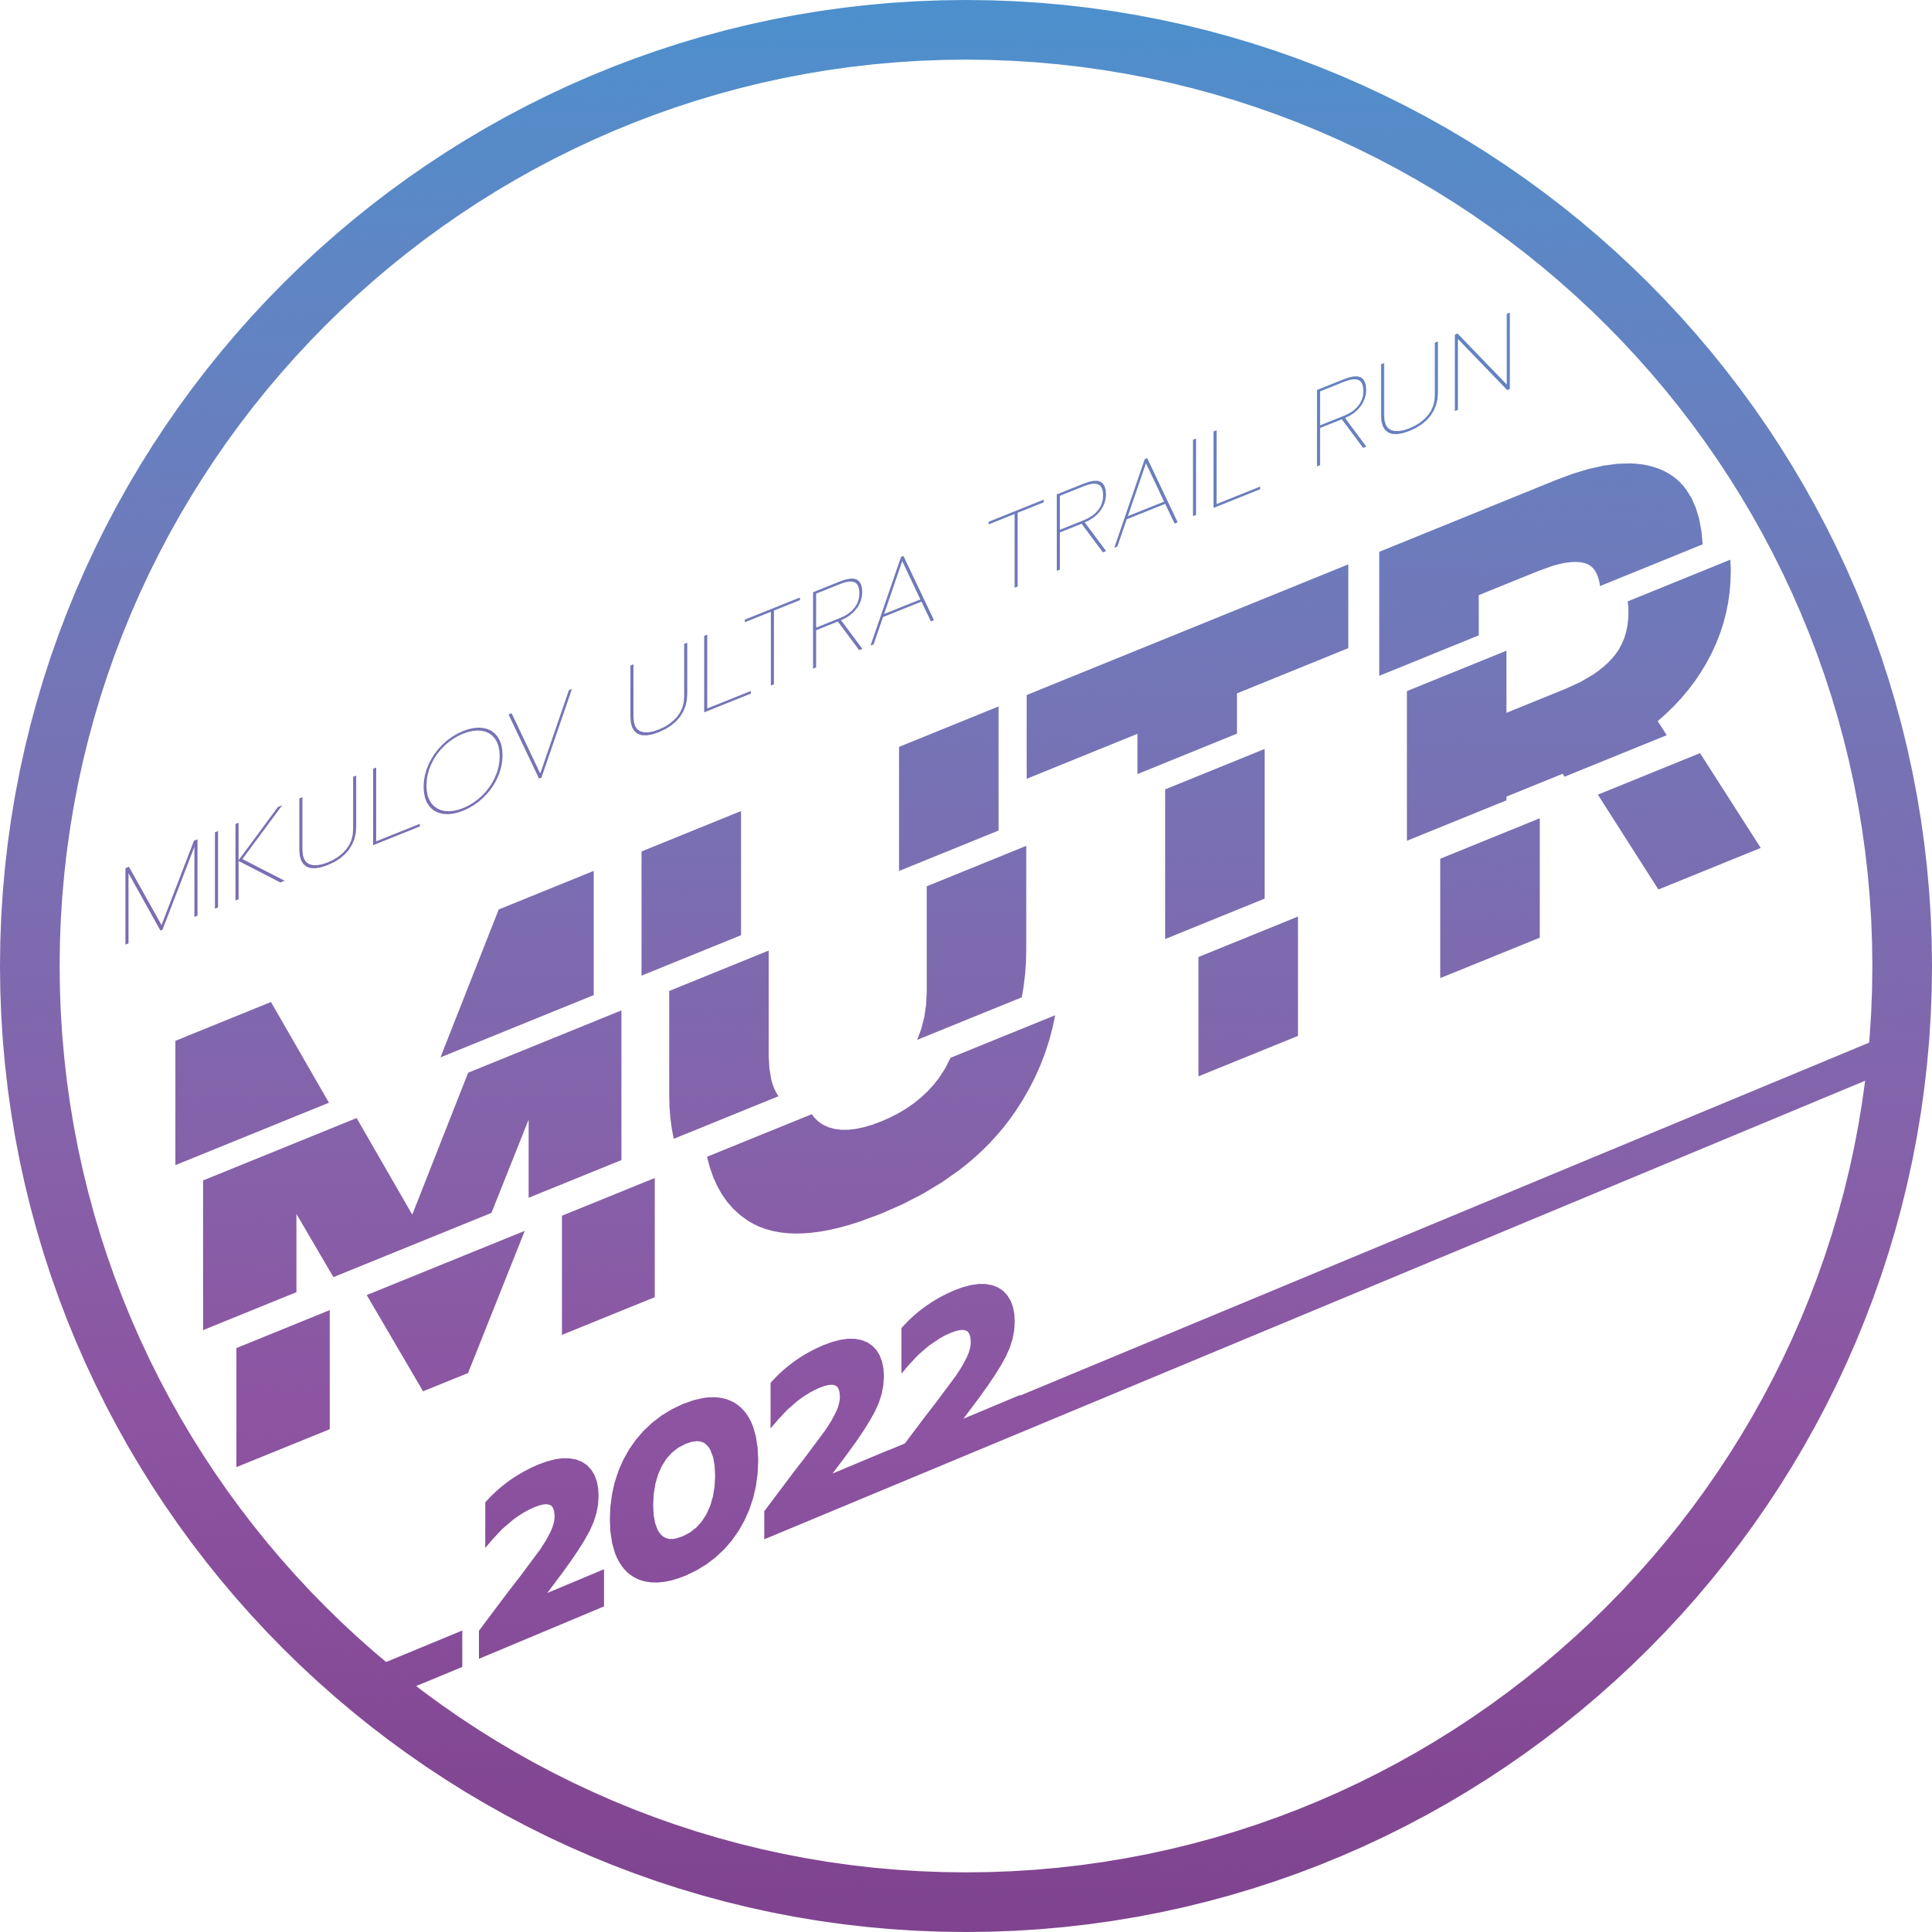 Mikulovský Ultra Trail Run